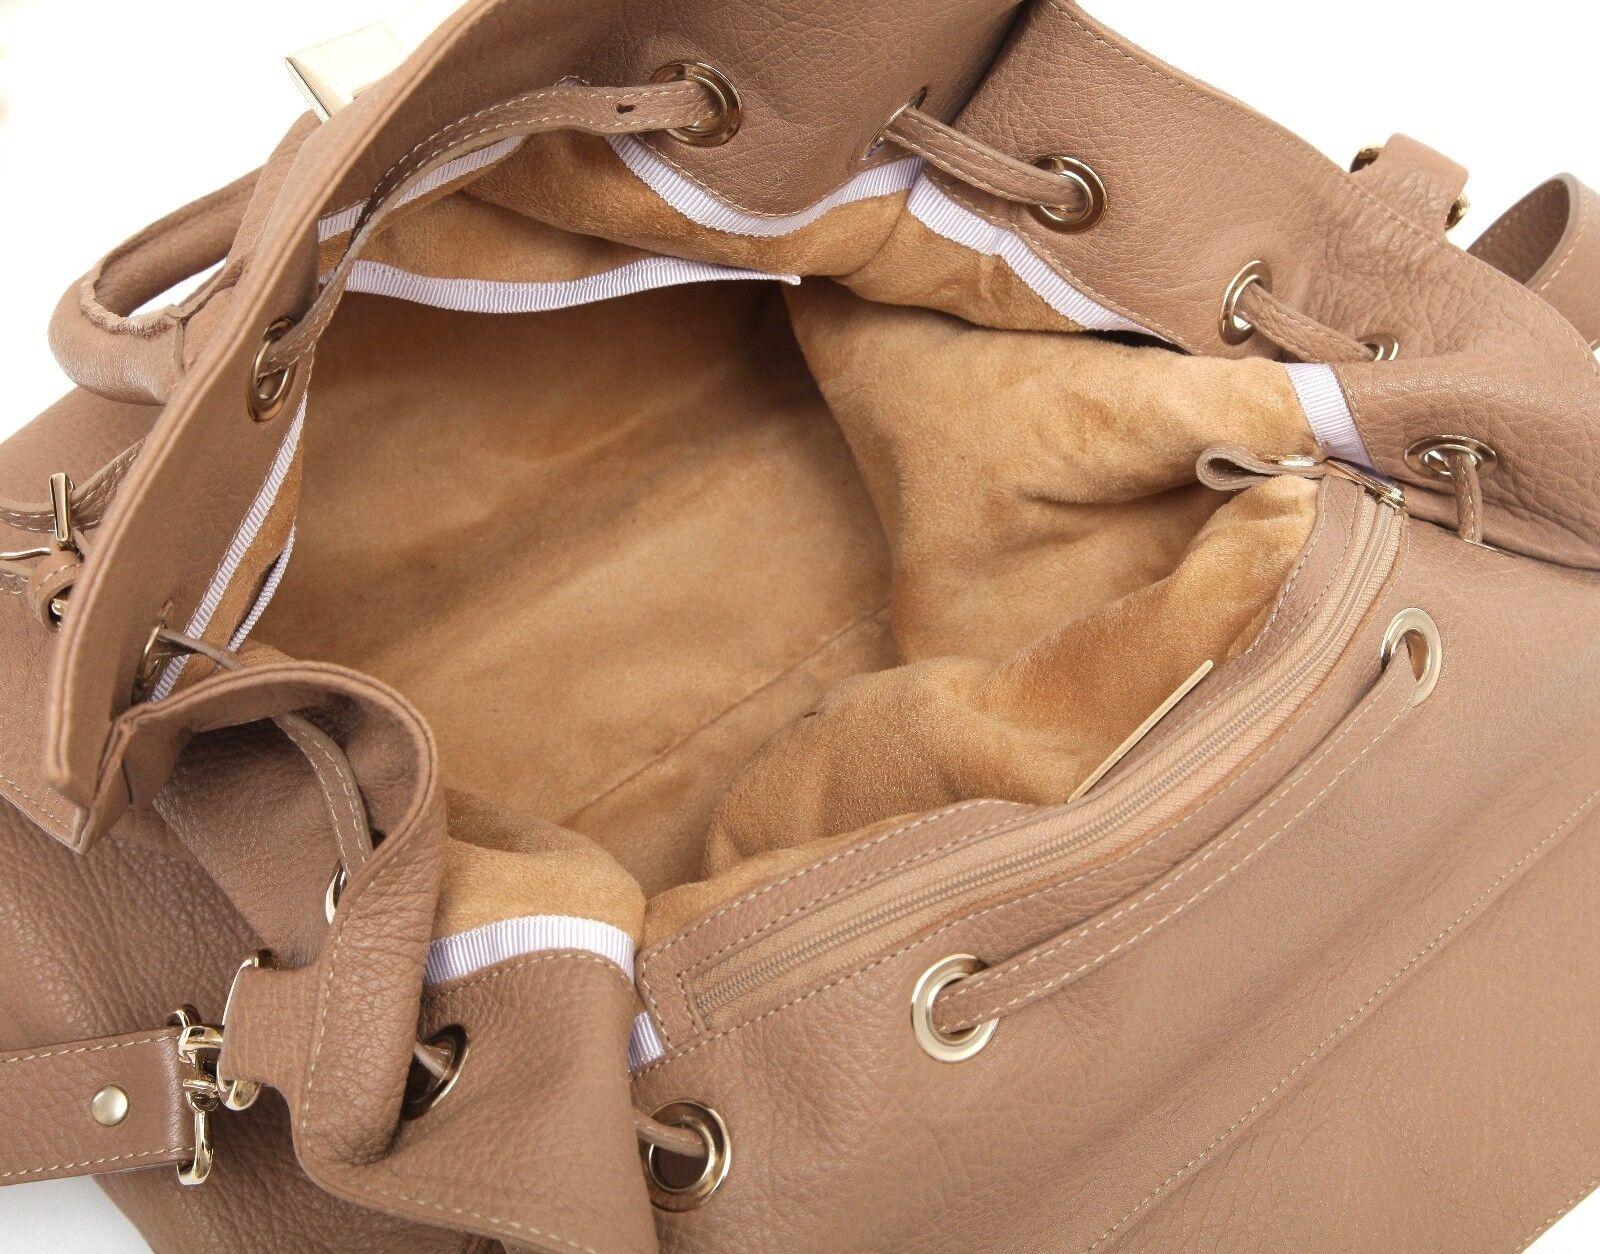 JIMMY CHOO Bag Tan Leather Large ROSABEL Satchel Tote Shoulder Strap Gold HW For Sale 6